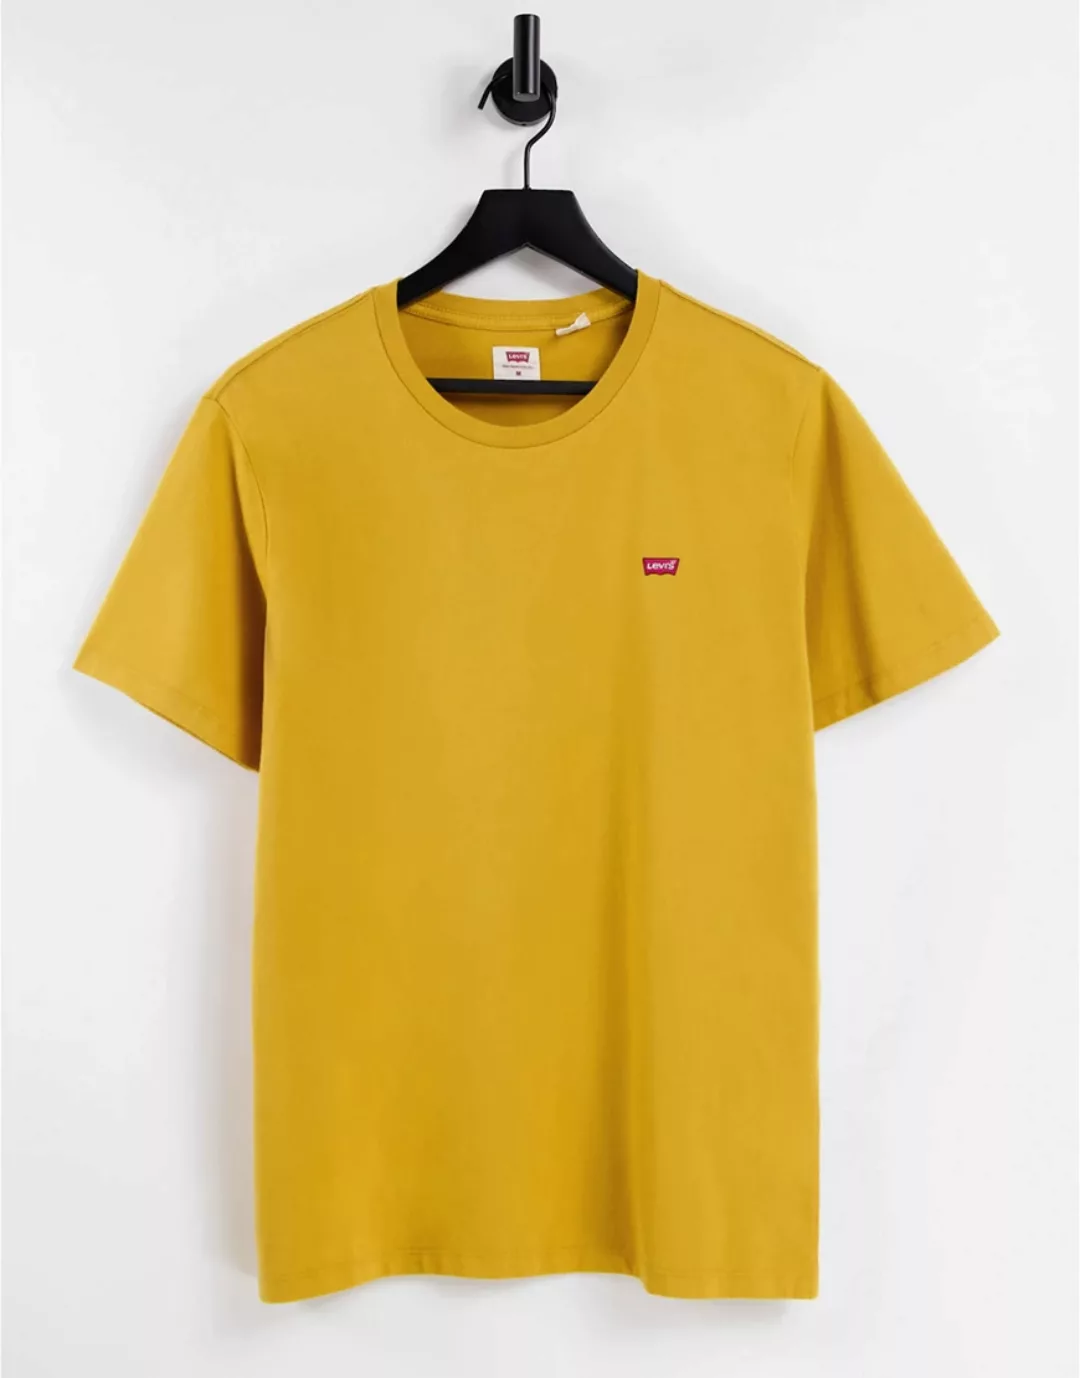 Levi's – Original – T-Shirt in Grün mit Batwing-Logo günstig online kaufen